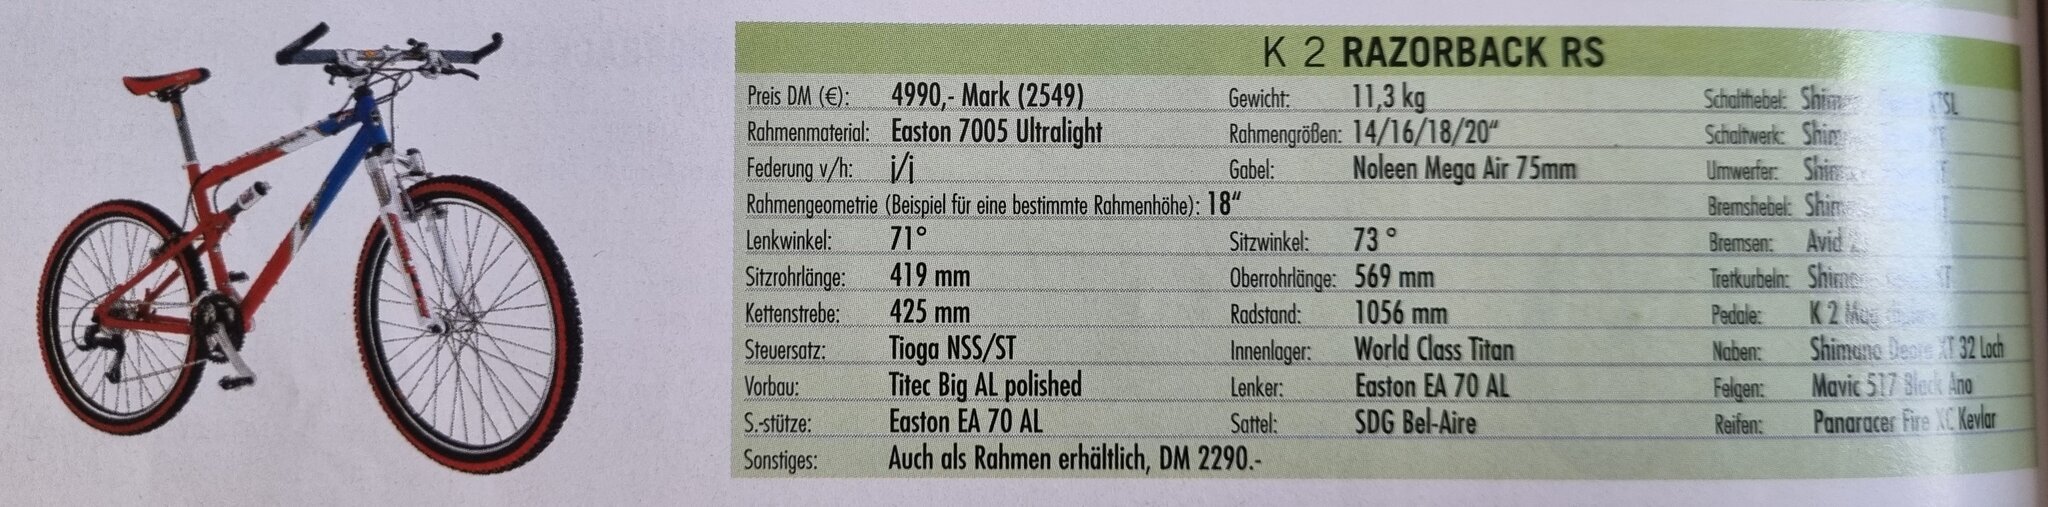 K2 Razorback RS.jpg